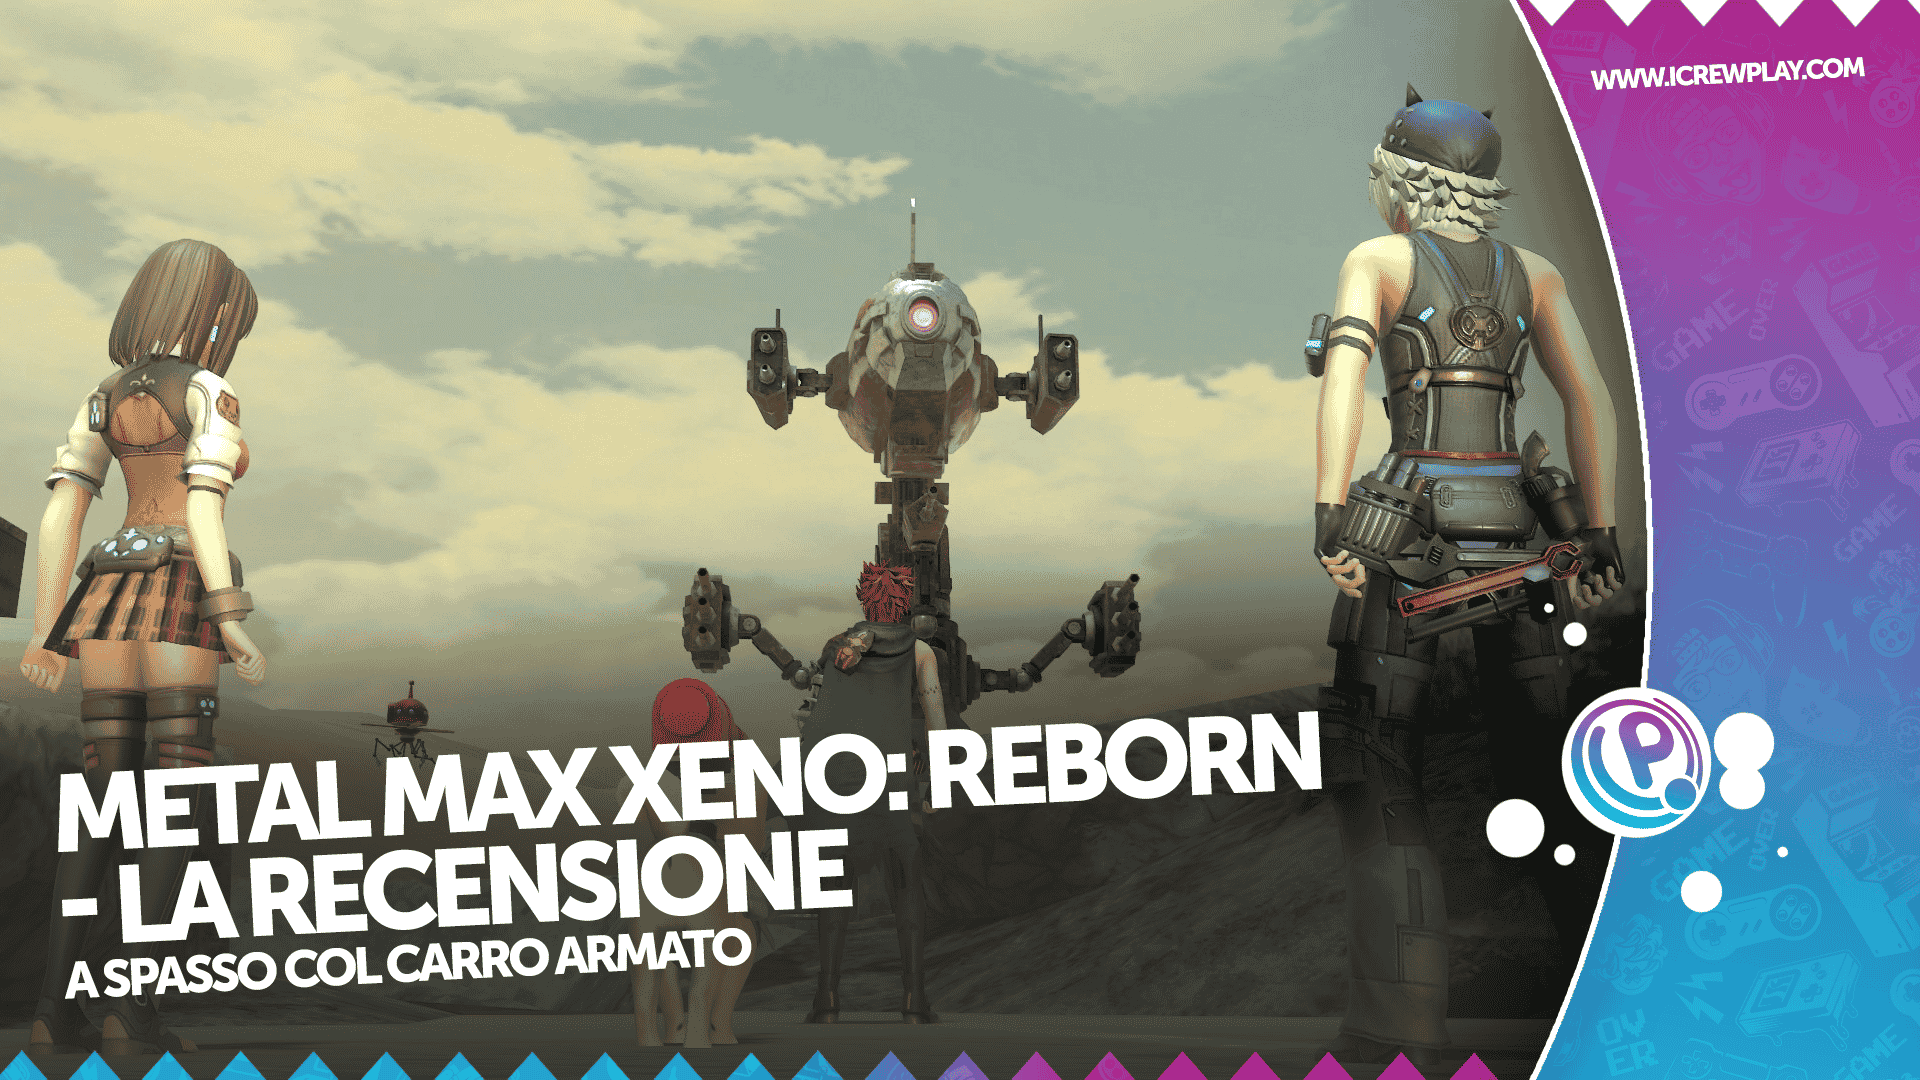 Metal Max Xeno Reborn - la recensione per Nintendo Switch 12